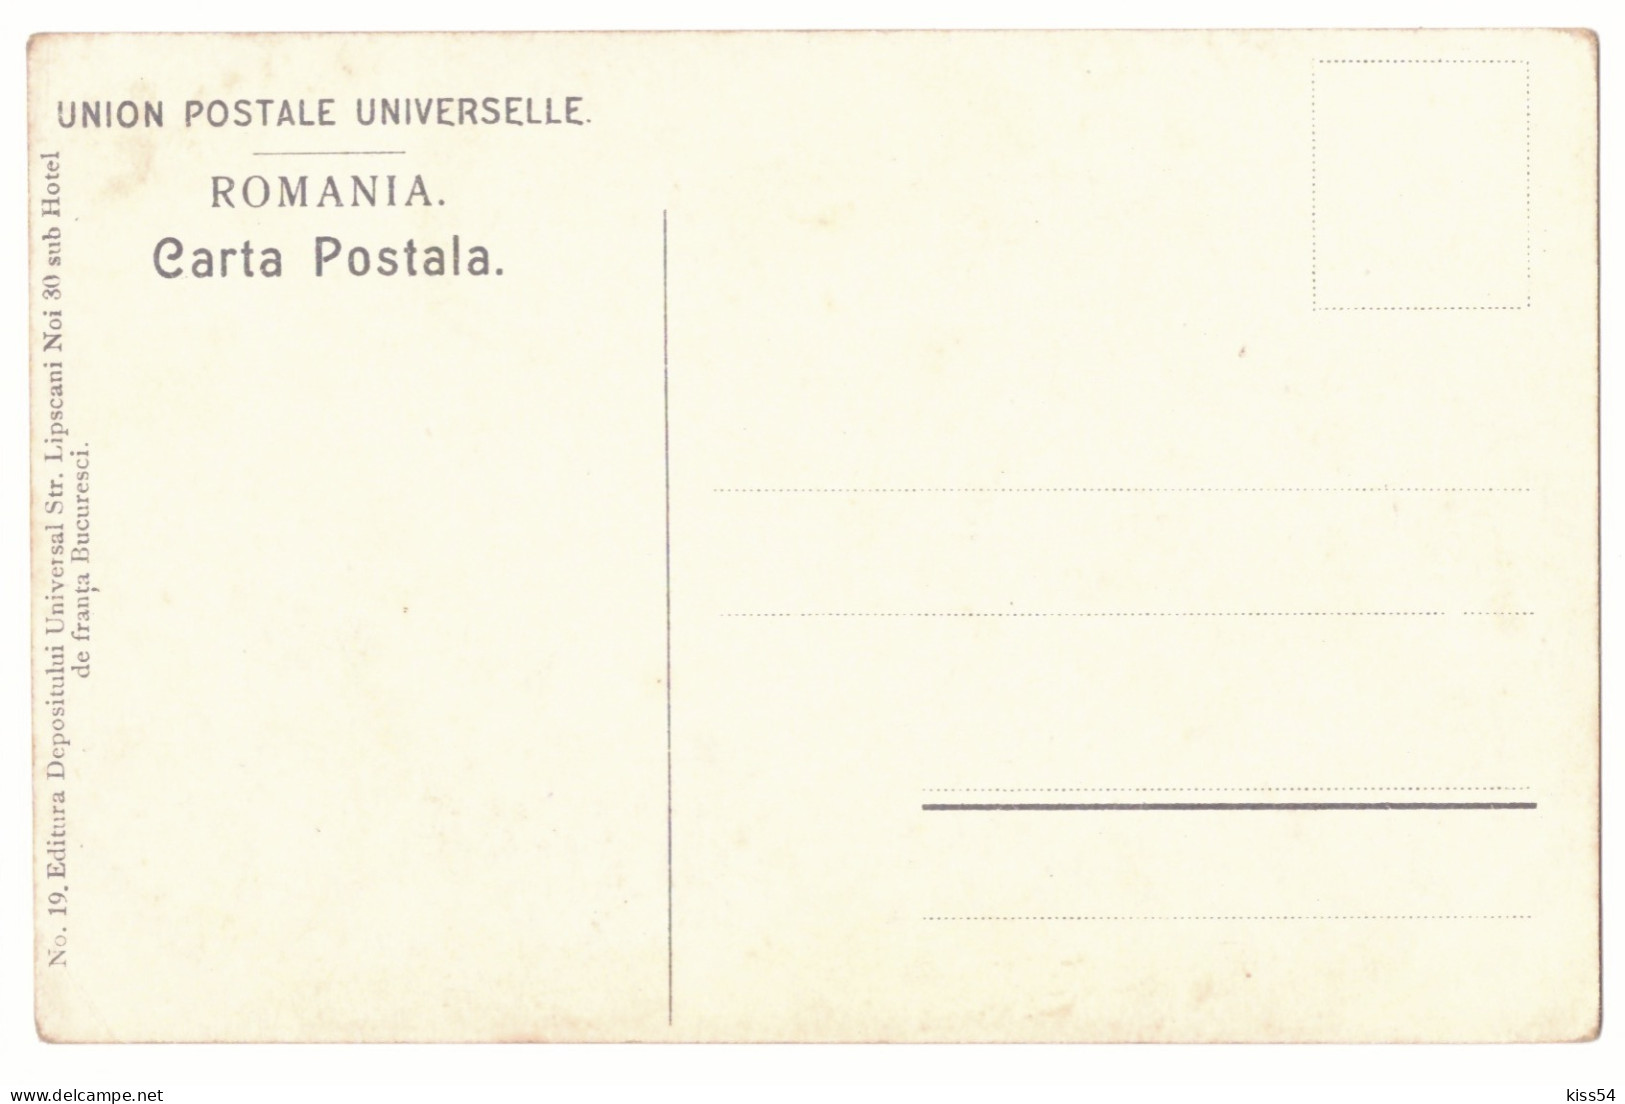 RO 40 - 21166 ETHNIC, Dansatori, Romania - Old Postcard - Unused - Romania